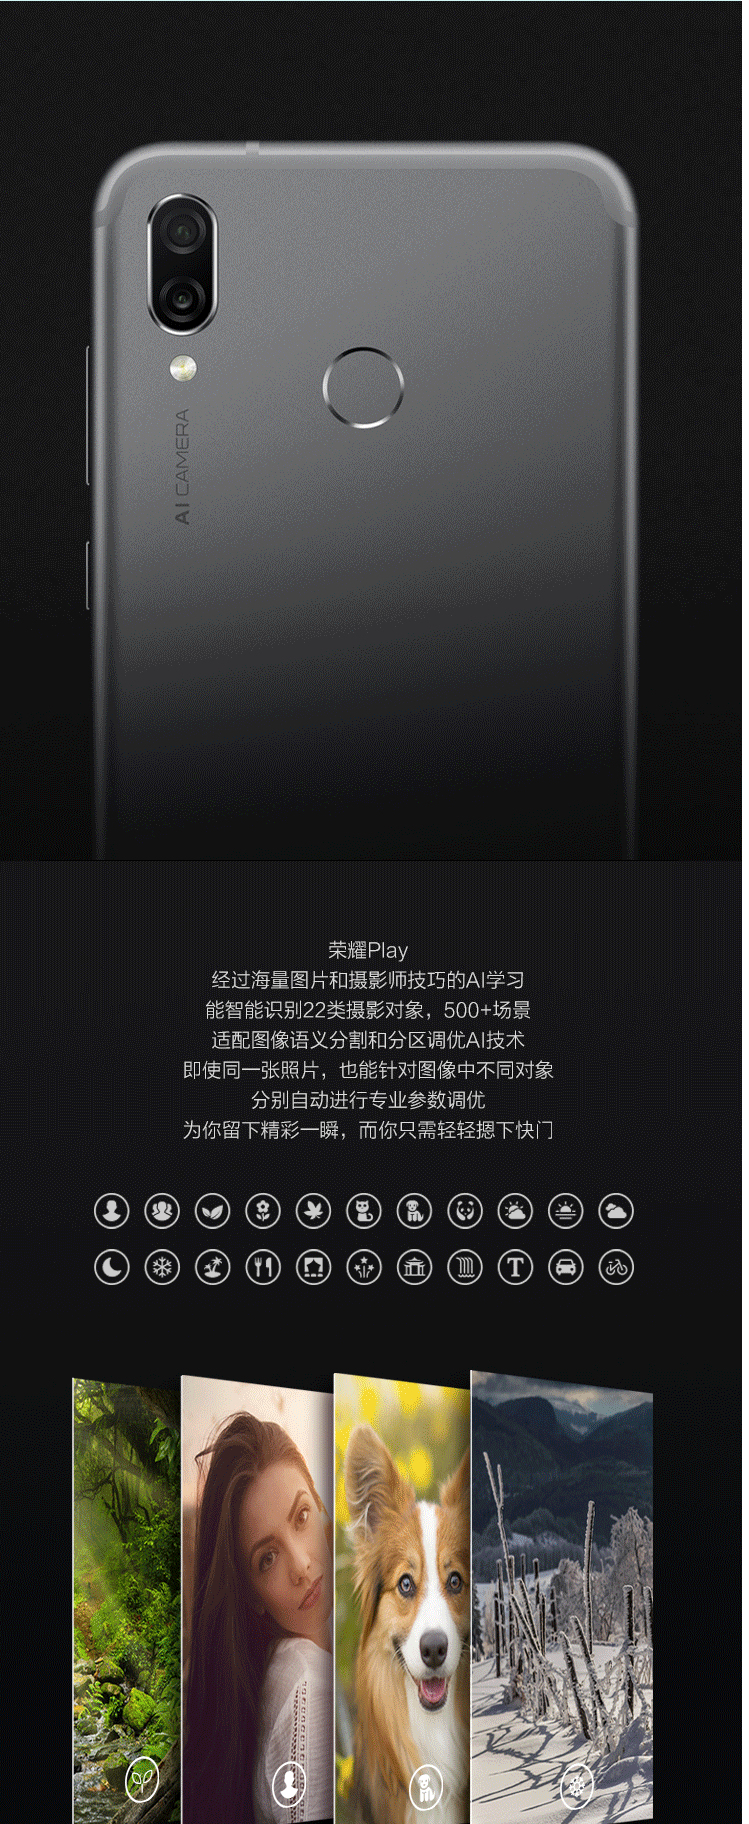 【新品上市】华为/荣耀(honor)Play 6+64GB 全网通手机 黑色 蓝色